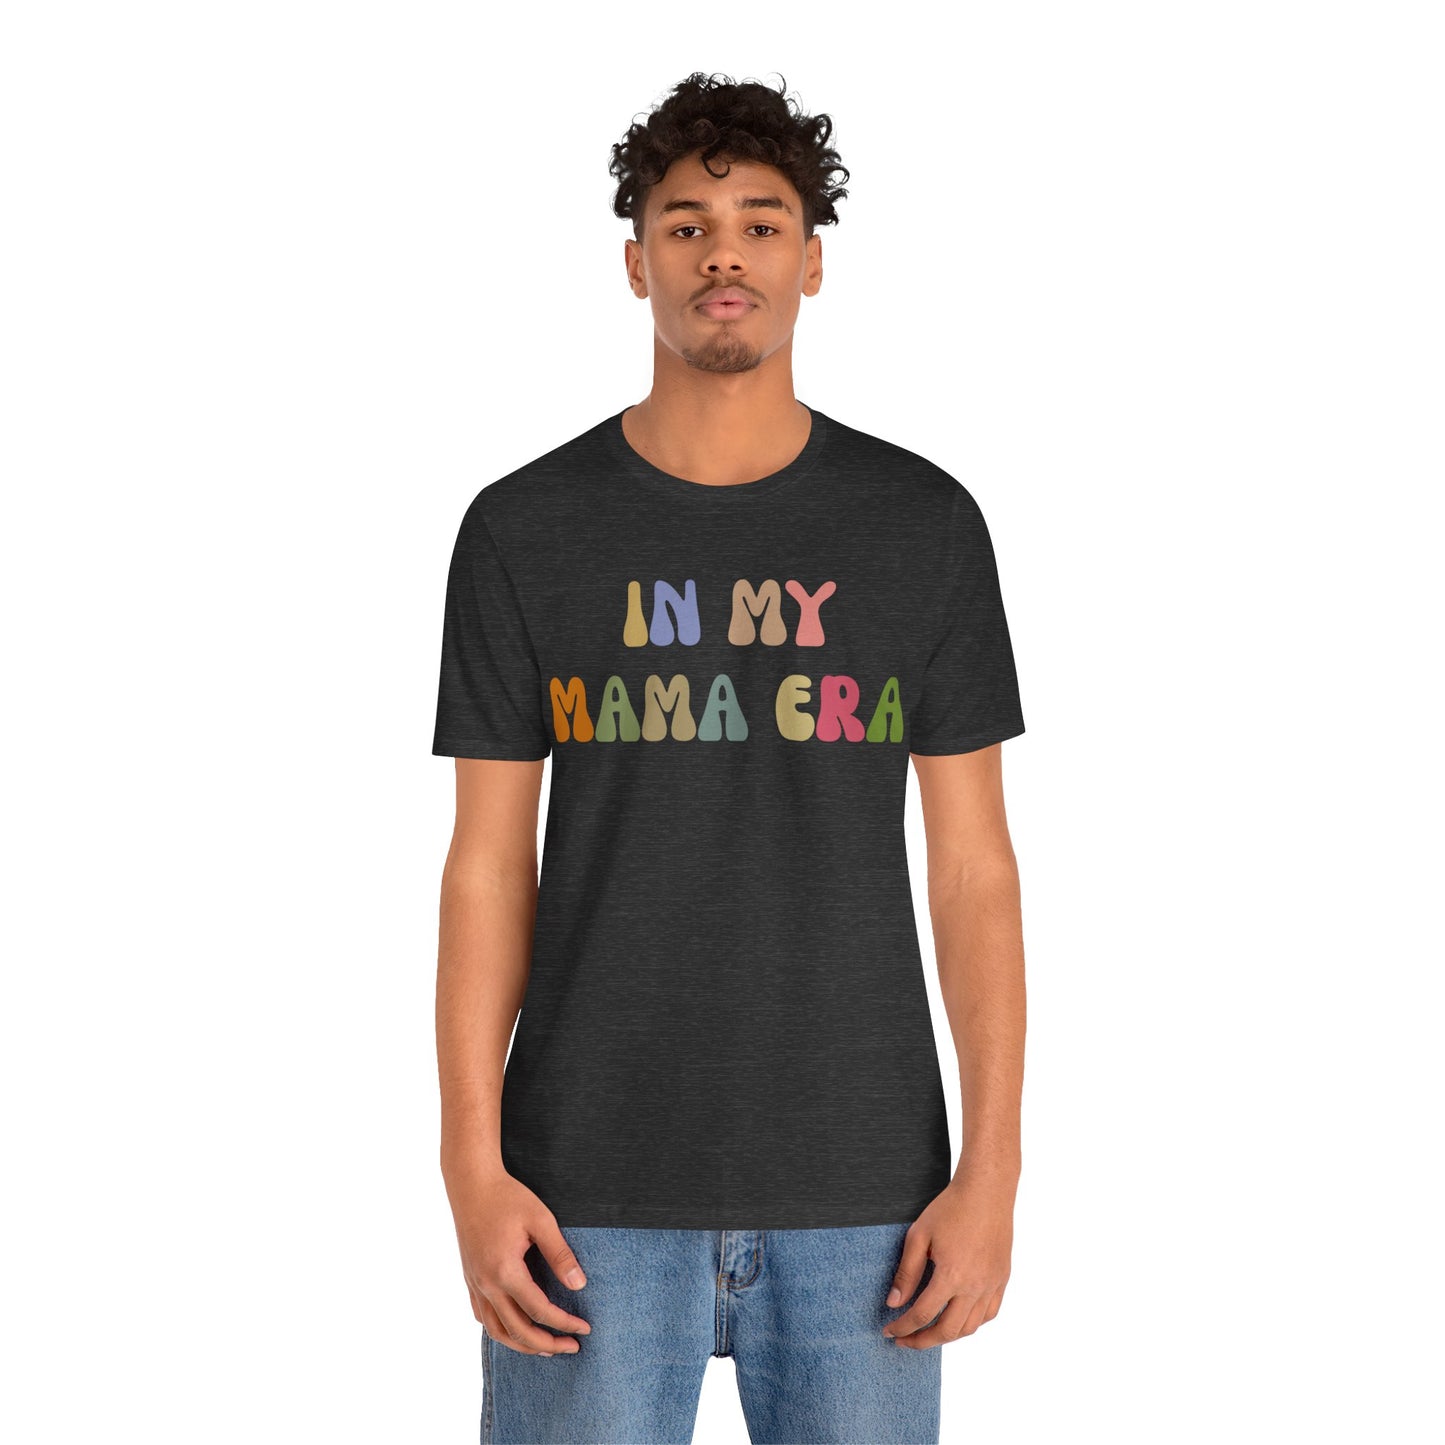 In My Mama Era Shirt, In My Mom Era, Mama T shirt, Mama Crewneck, Mama Shirt, Mom Shirt, Eras Shirt, New Mom T shirt, T1090